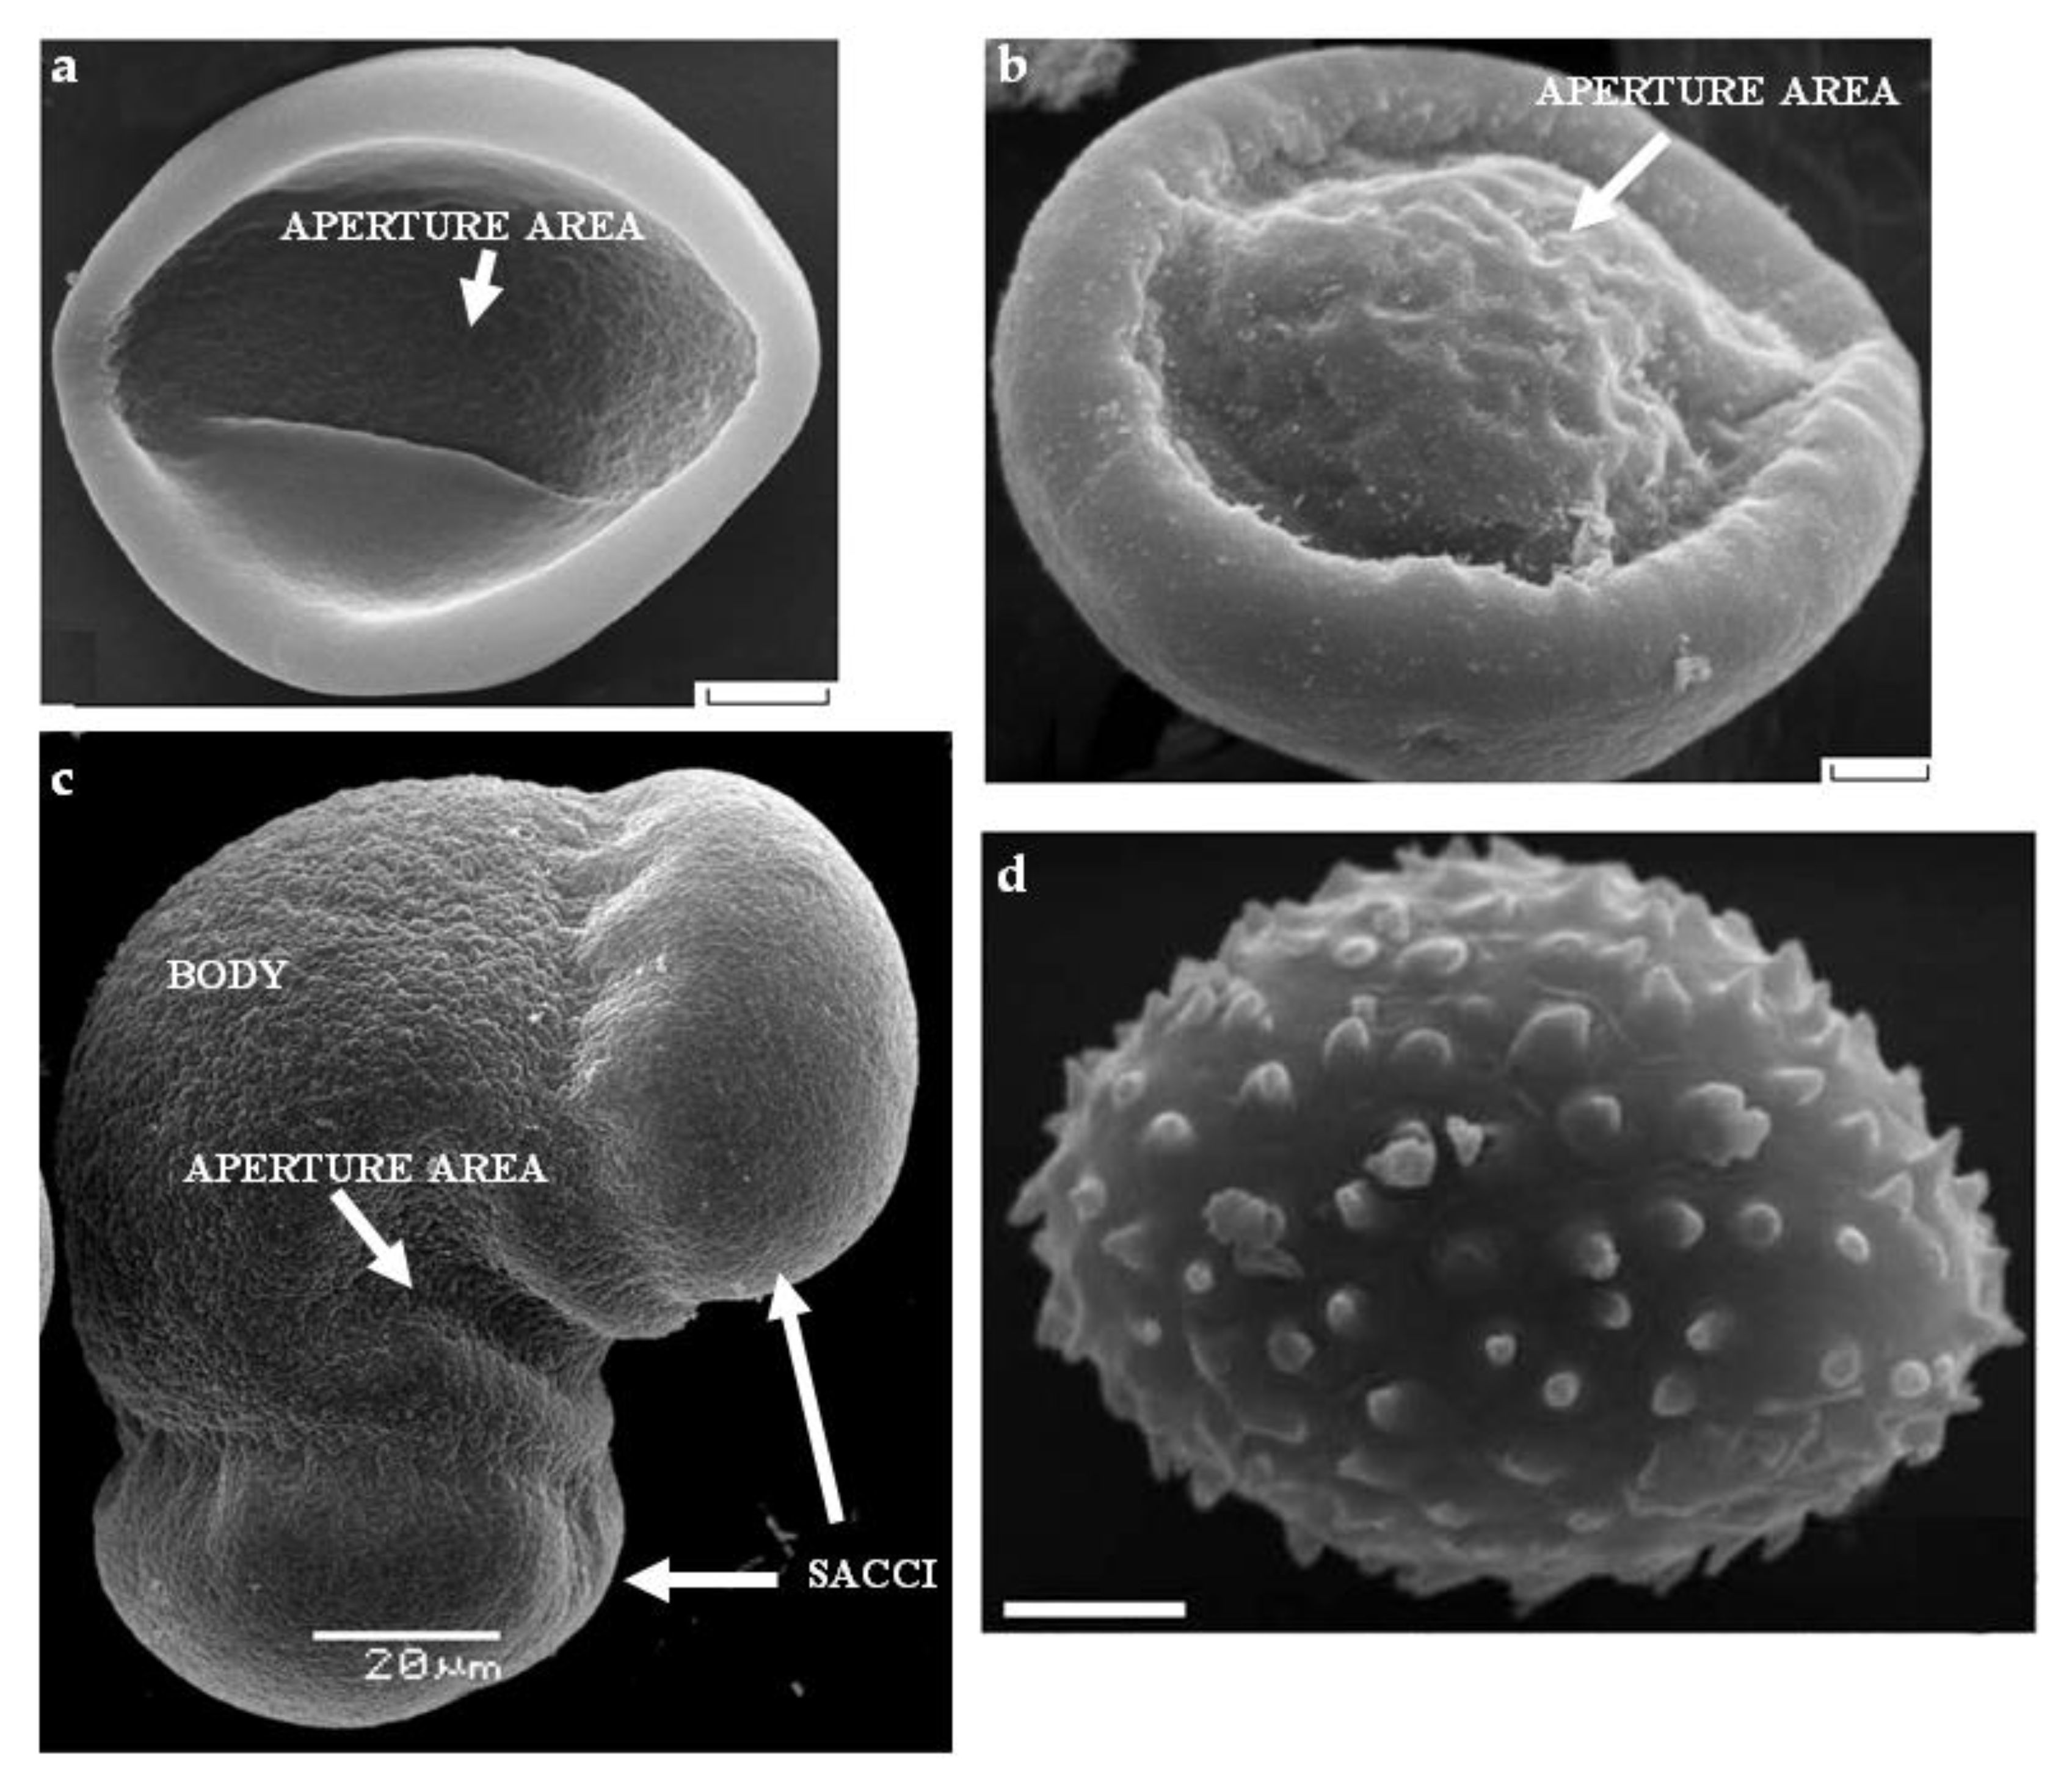 BIOLAB - Préparation Microscopique (Gymnospermes) - Pollen de pin  (ballonnets aérifères)